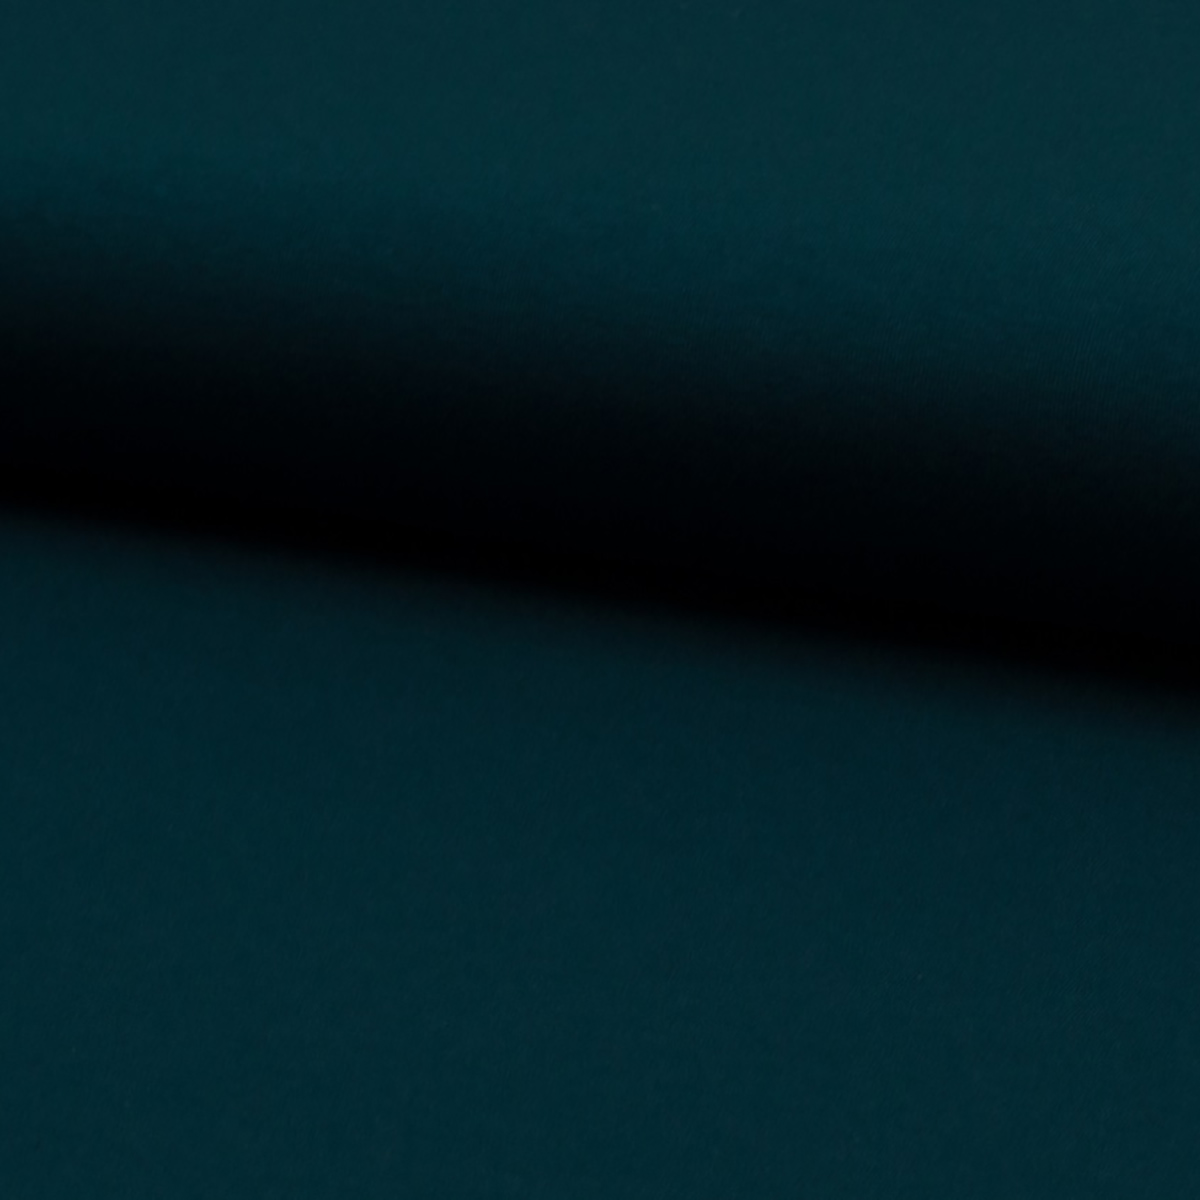 Elastik-Jersey schwer dunkel türkisgrün, ÖkoTex-zertifiziert, 150-160cm, 250g/qm, 400 g/lfm  